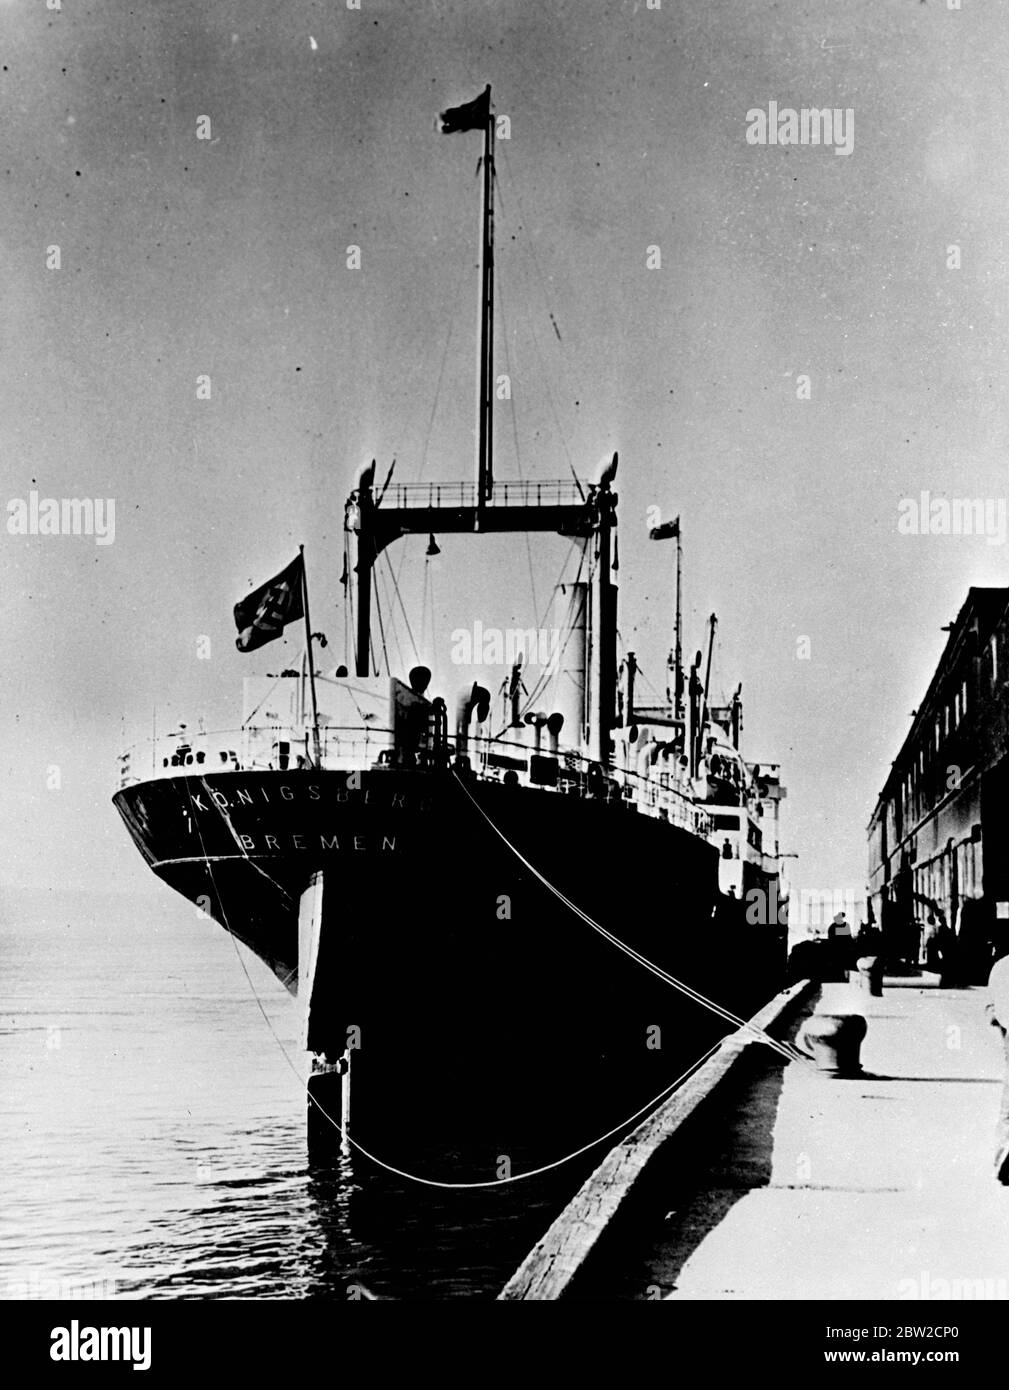 Das deutsche Schiff wurde am QuÃ©bec im August 26 gefesselt, nachdem die kanadischen Behörden es 5 Meilen unterhalb von QuÃ©bec bestiegen hatten und seinen Meister gezwungen hatten, auf dem Schiff auf der Saint Lawrence zurückzudrehen. In seiner Eile, nach Hitlers Befehl wieder nach Deutschland zu gelangen, gelang es dem Schiff nicht, eine Ladung Zinkoxid zu entladen, die von einer Firma in Montreal im Voraus bezahlt worden war. Die Admiralität erließ einen Haftbefehl, auf dem das Schiff festgehalten wurde. Bis 26. August 1939 Stockfoto